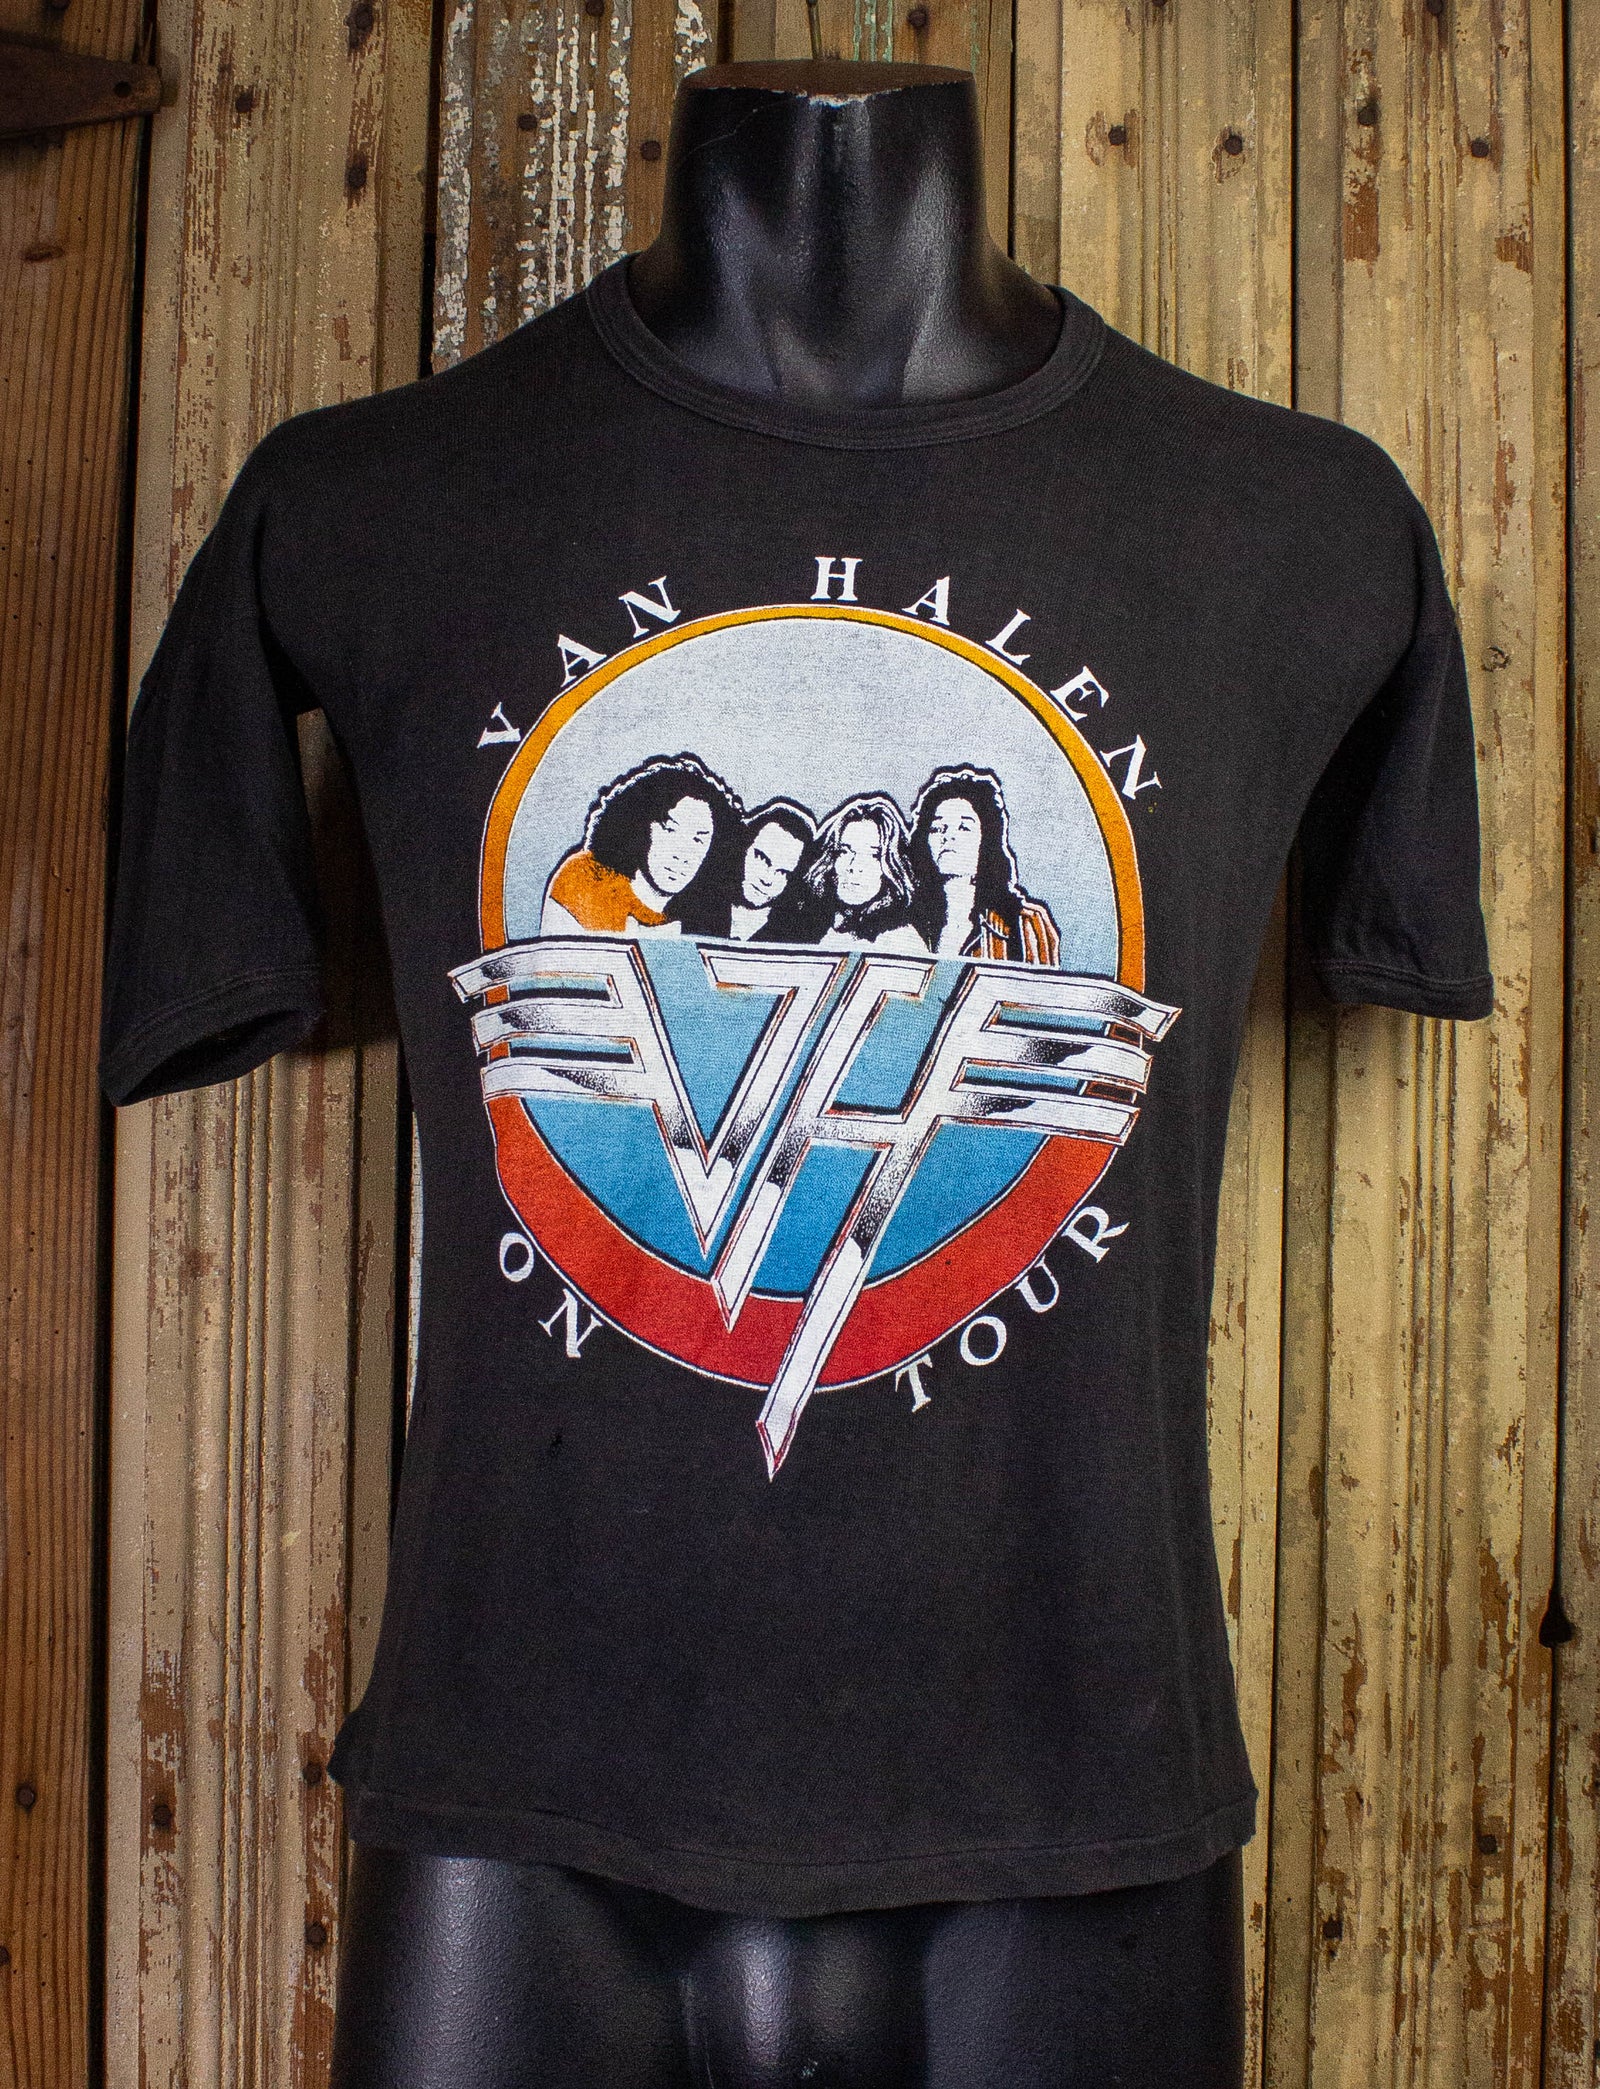 Vintage Van Halen On Tour Parking Lot Concert T Shirt 1979 Black Medium